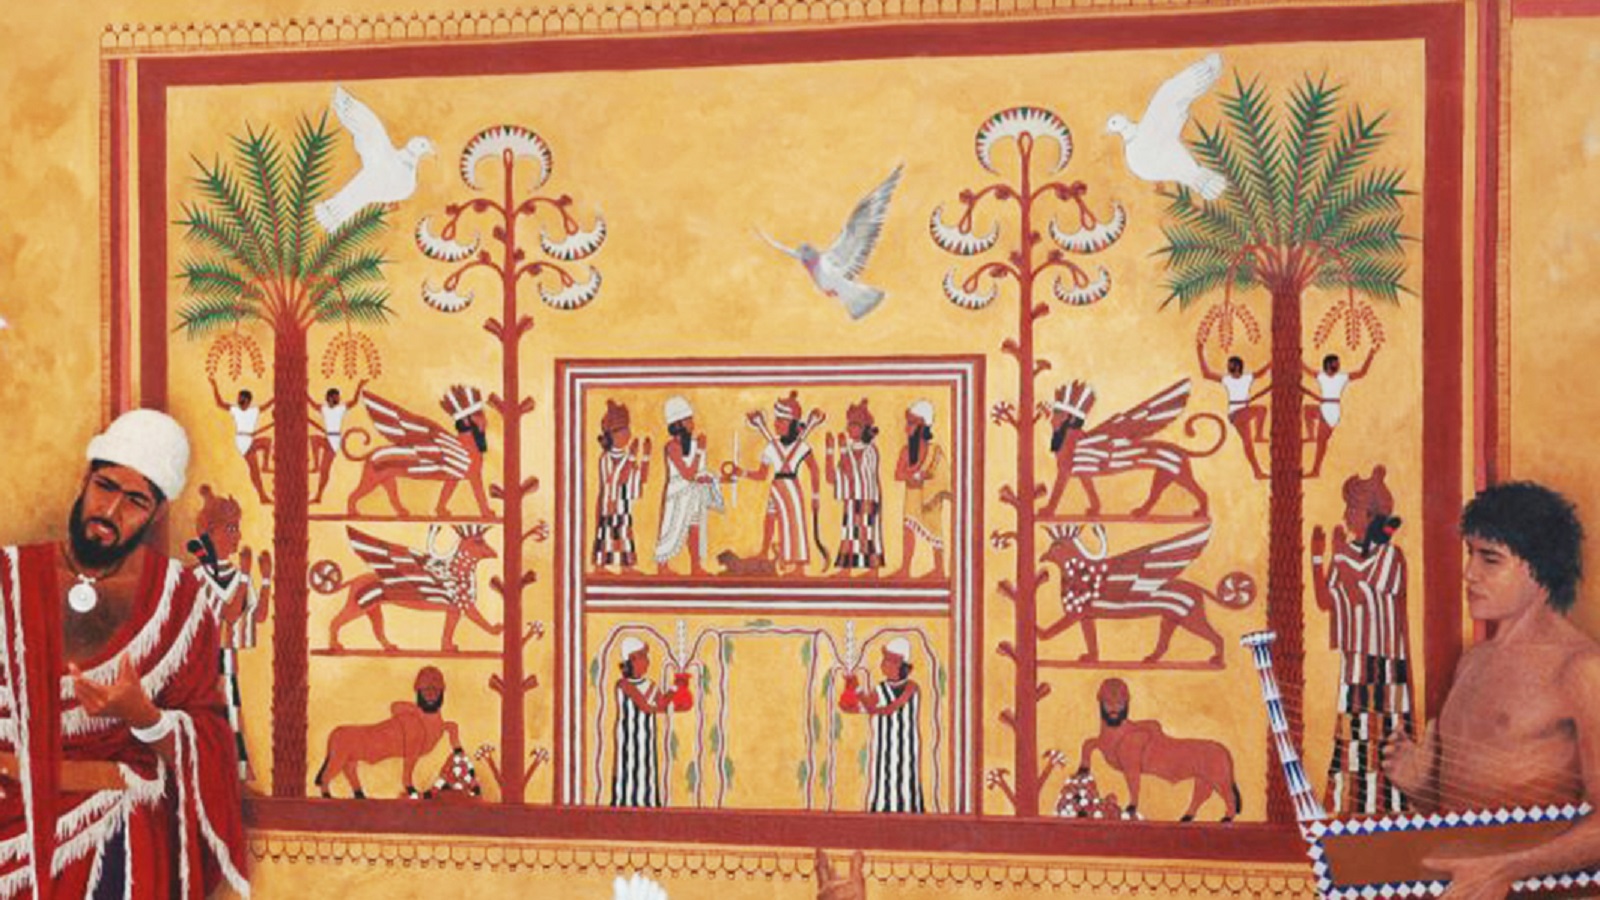 رسم توثيقي لجدارية في القصر الملكي الكبير الخاص بالملك زمري ليم في مدينة ماري